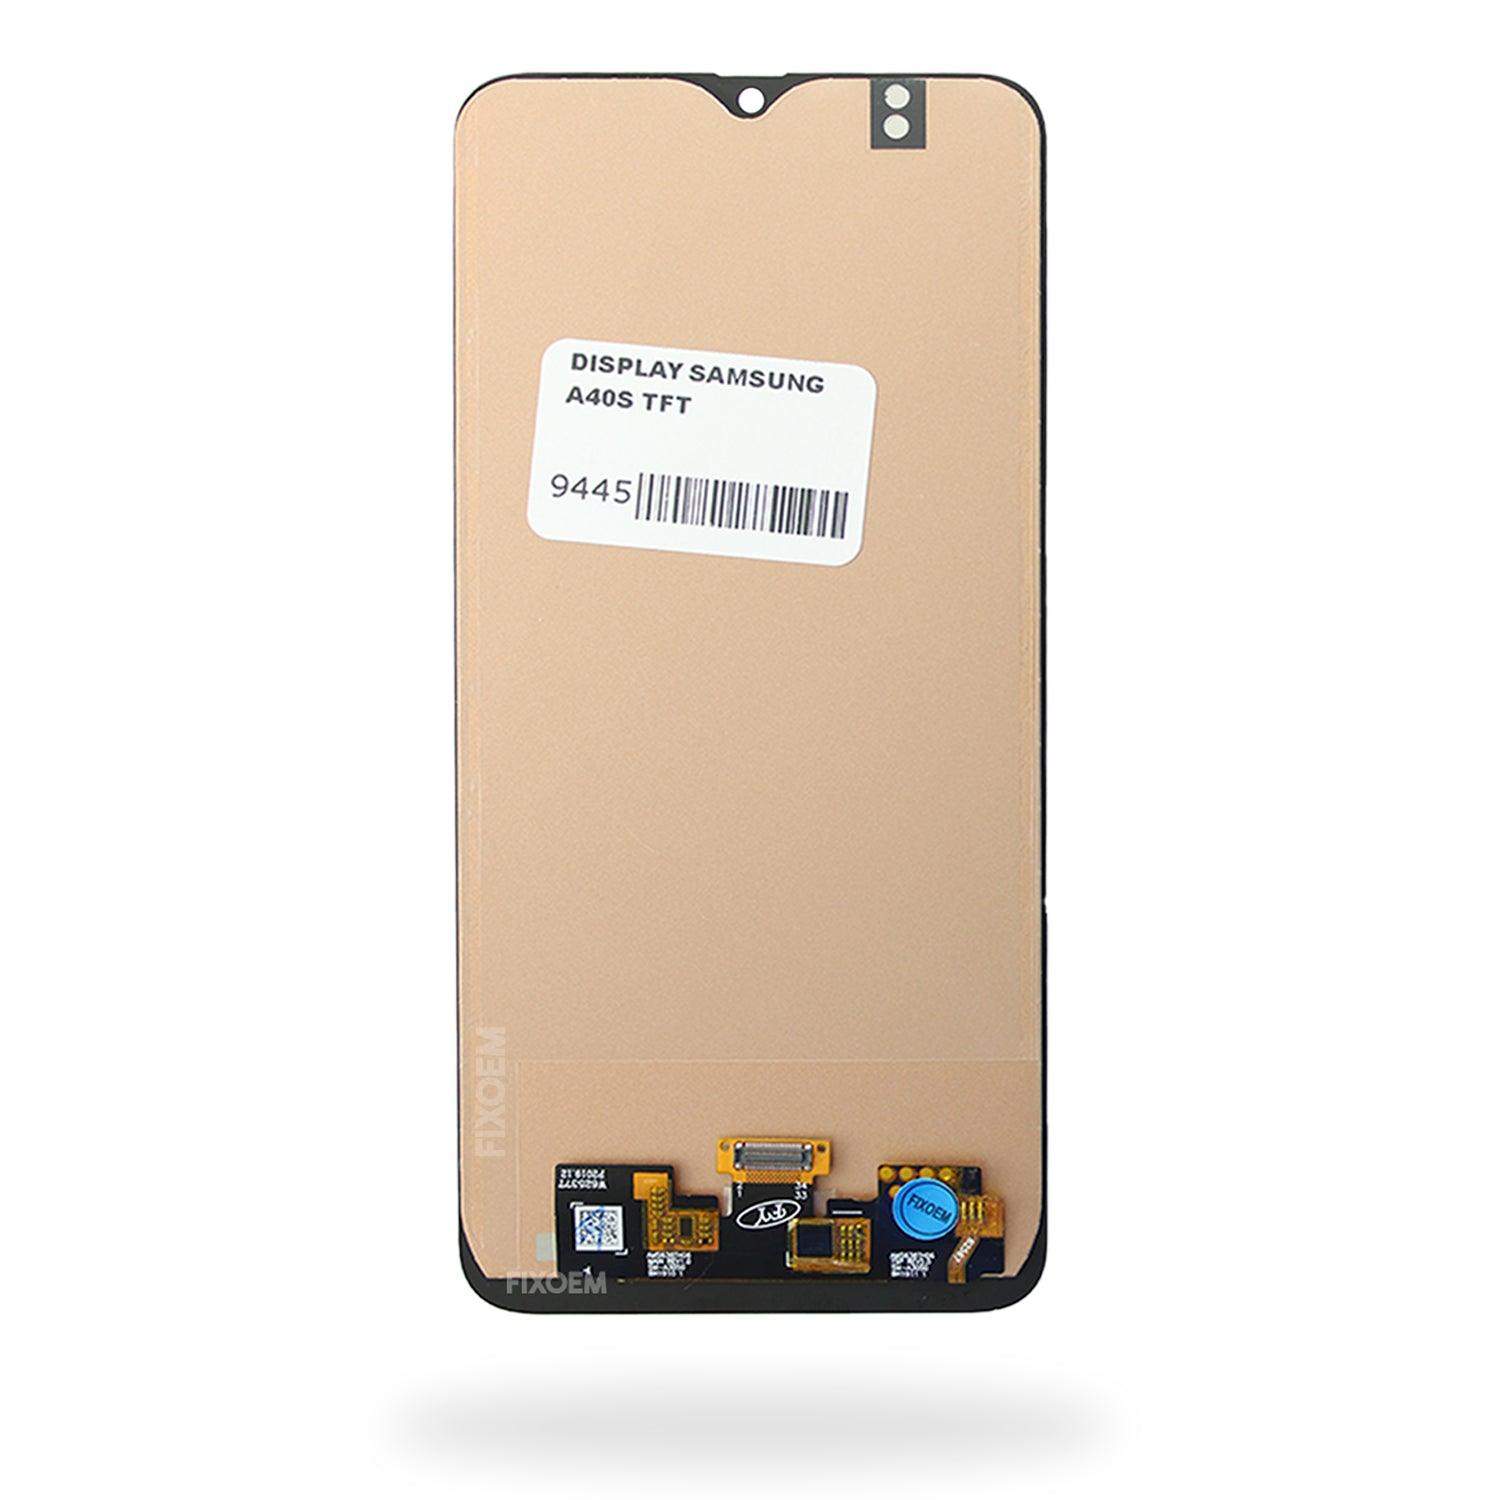 Display Samsung A40S Sm-A3050 IPS . a solo $ 630.00 Refaccion y puestos celulares, refurbish y microelectronica.- FixOEM